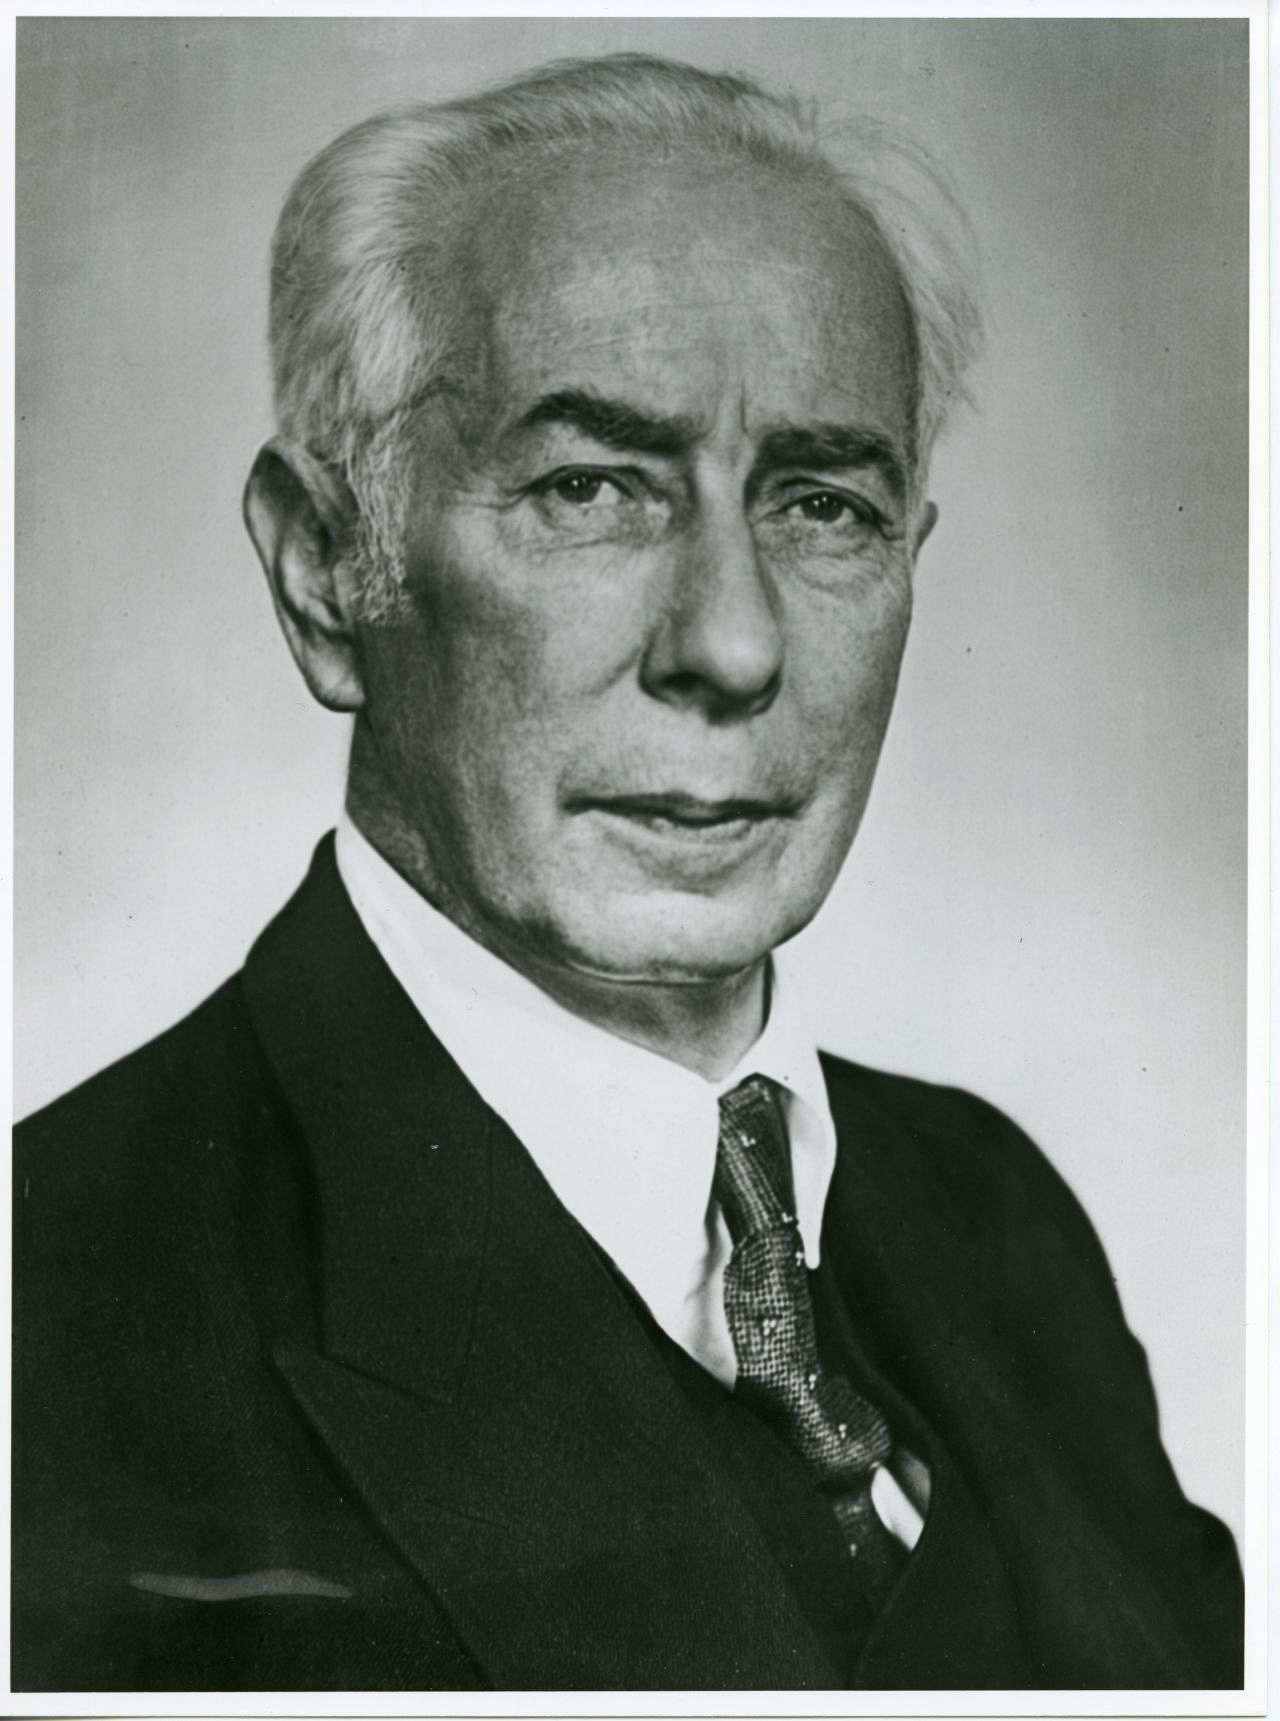 Porträt des Bundespräsidenten Theodor Heuss, 1950.